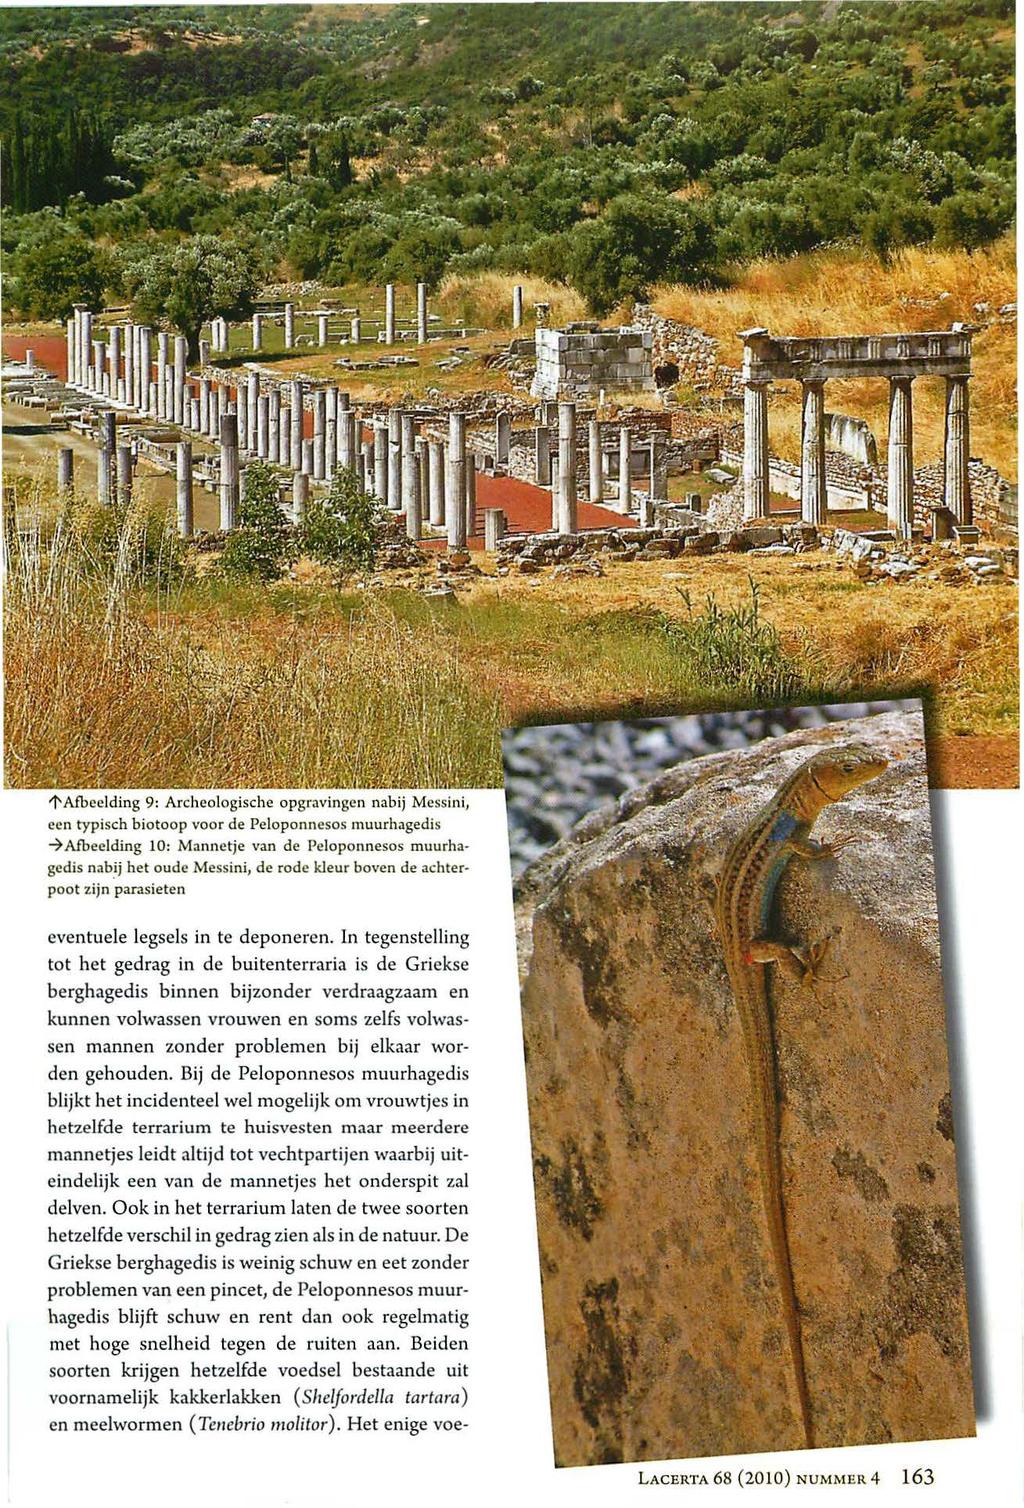 1' Afbeelding 9: Archeologische opgravingen nabij Messin i, een typisch biotoop voor de Peloponnesos muurhagedis 7Aibeelding 10: Mannetje van de Peloponnesos muurhagedis nab.